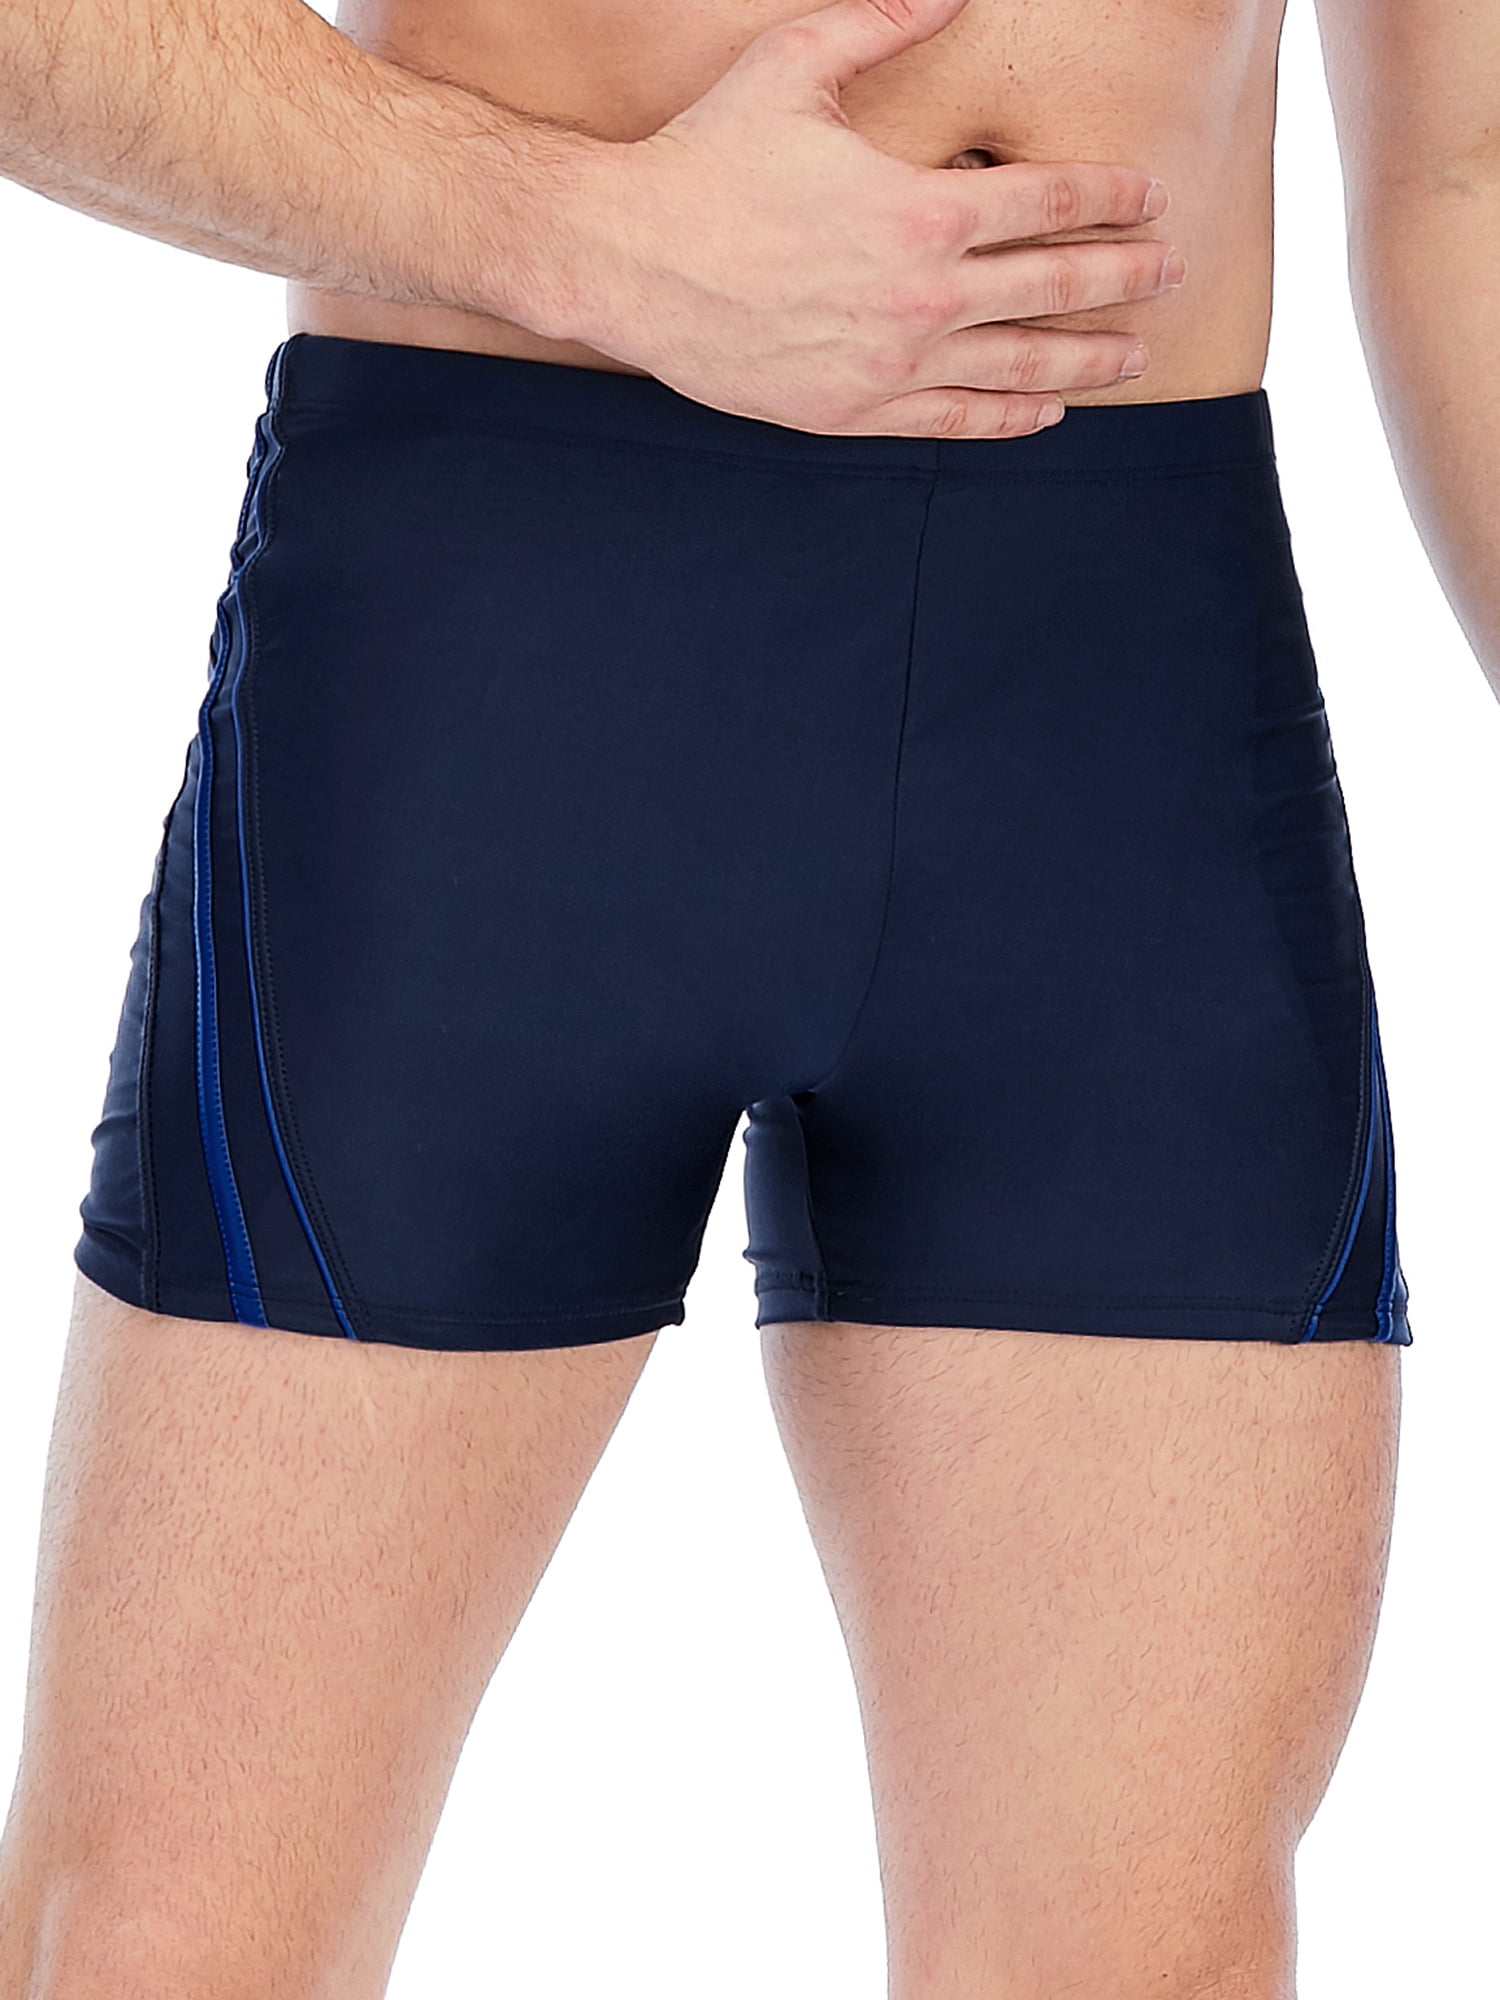 Men's Square Leg Swimwear | SwimOutlet.com